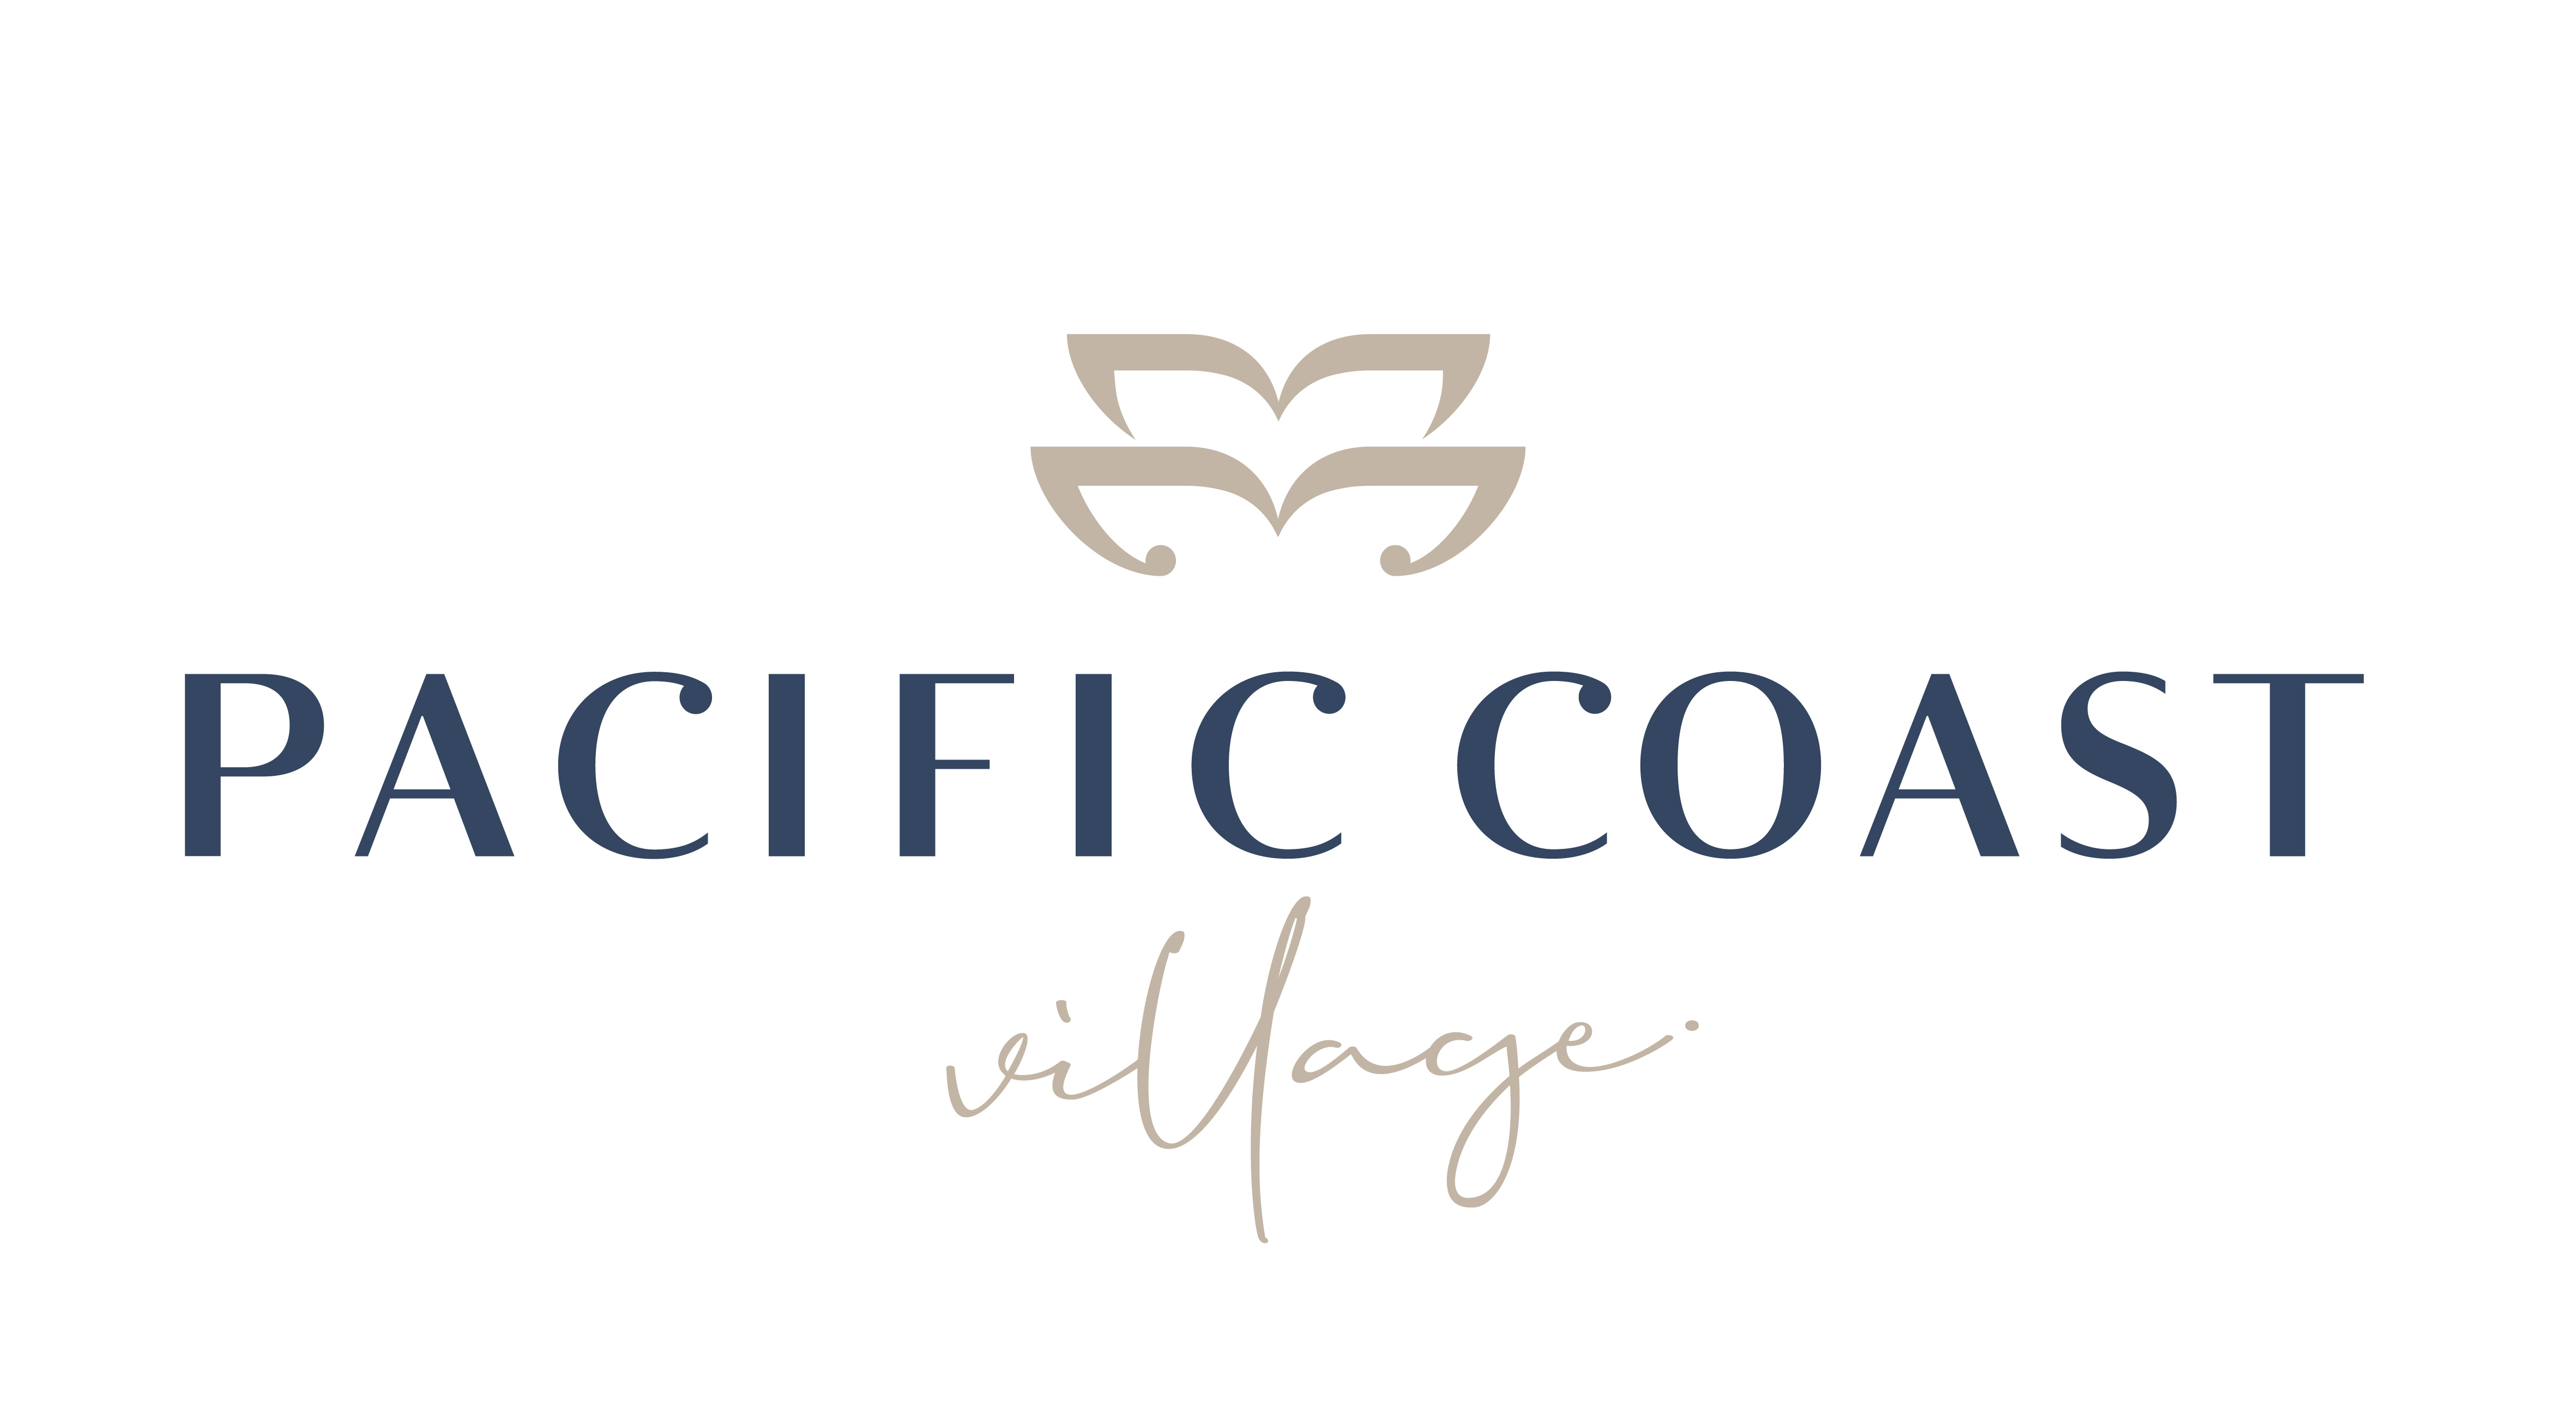 Pacific Coast Village logo